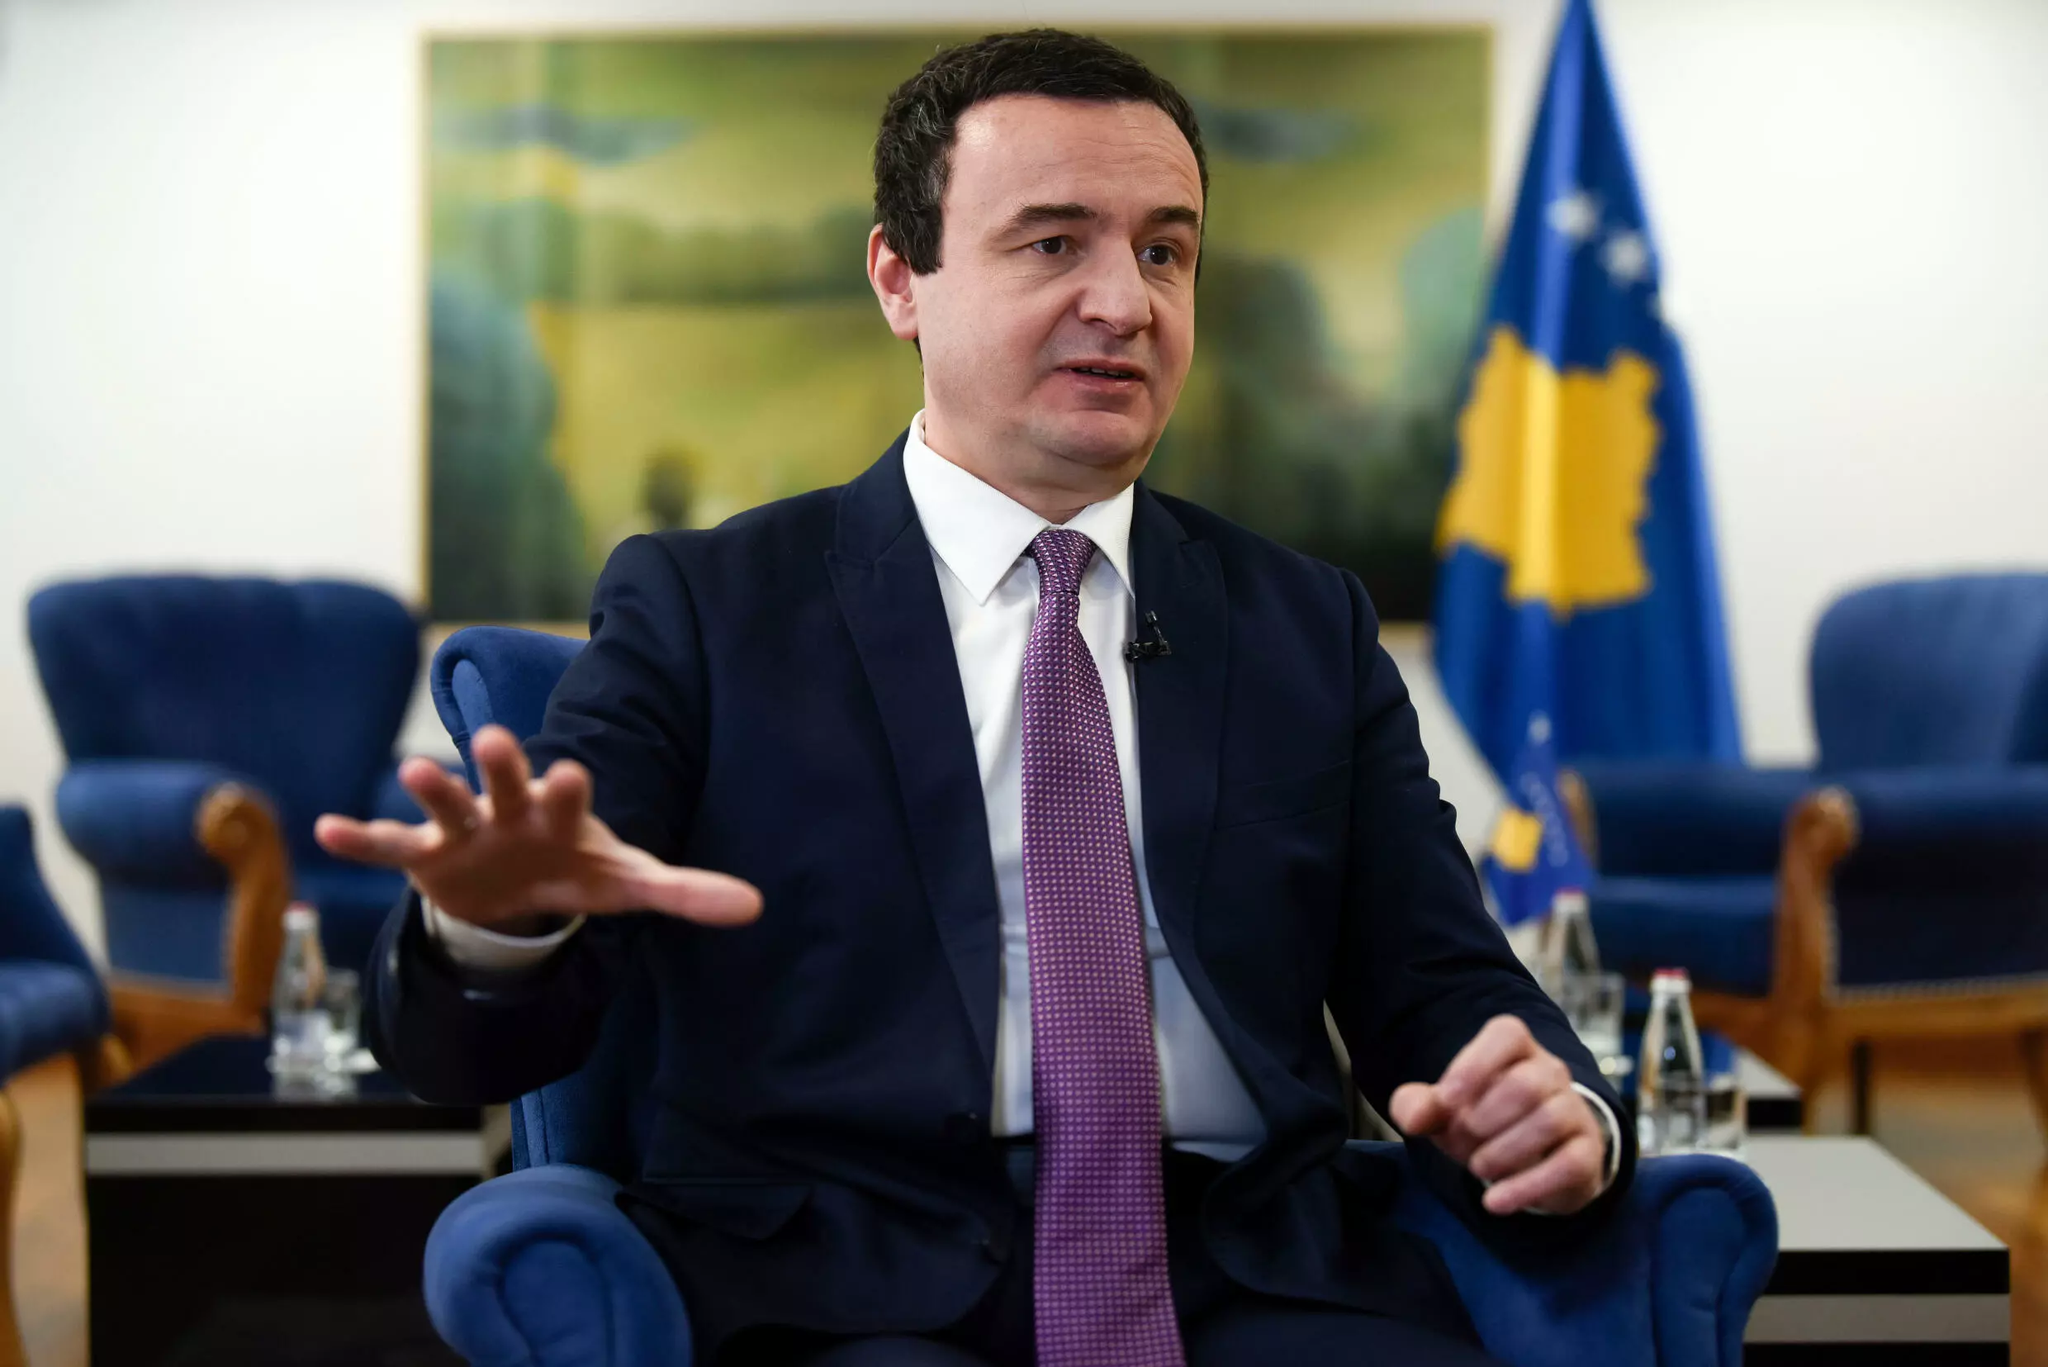 Bëjeni anëtarësimin më të lehtë, i thotë kryeministri i Kosovës NATO-s dhe BE-së